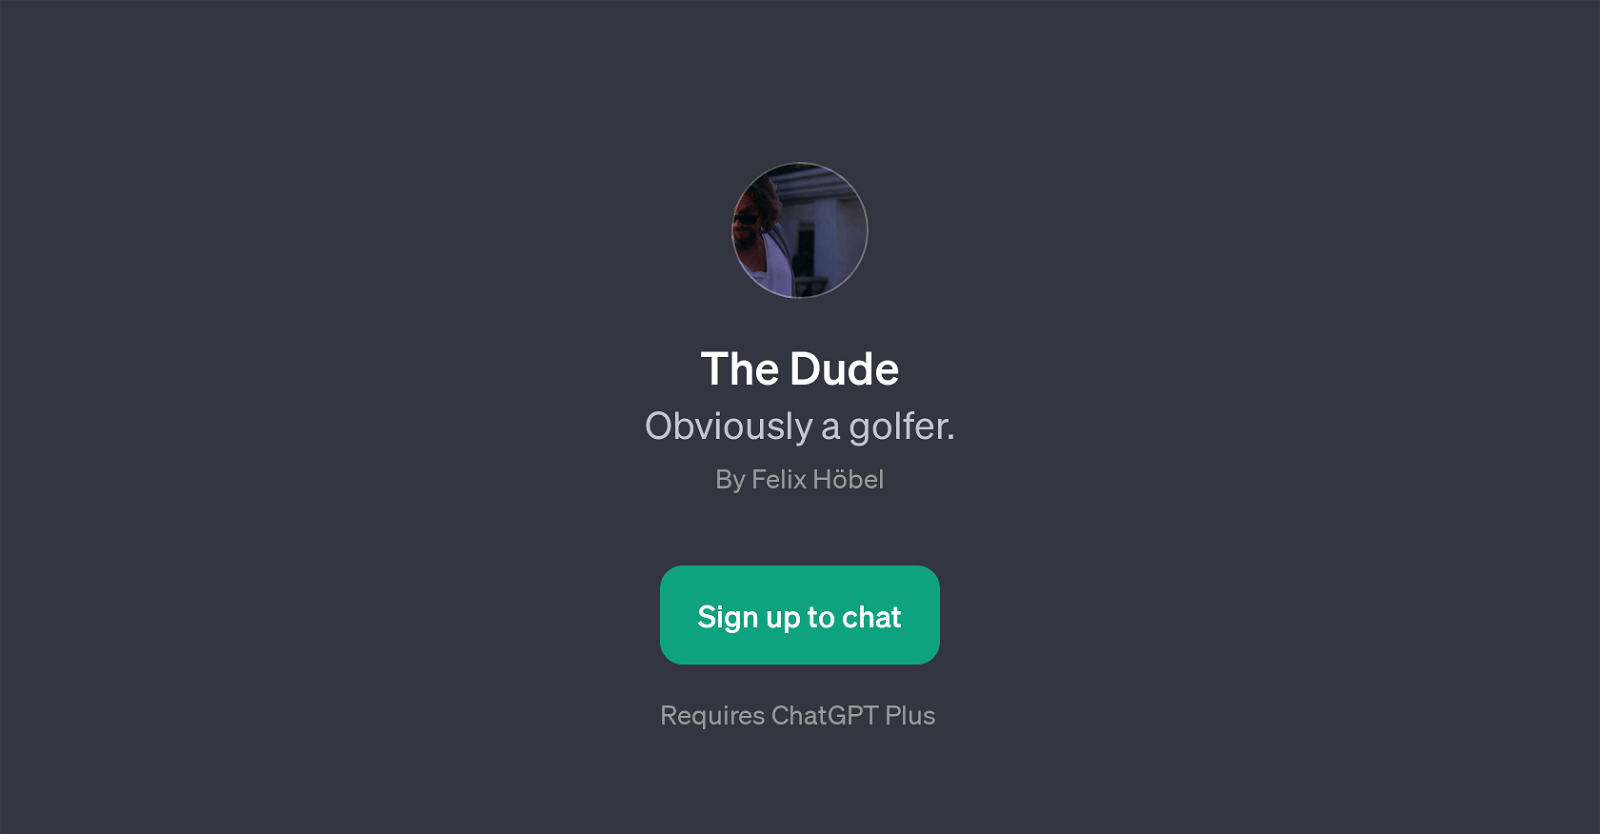 The Dude website